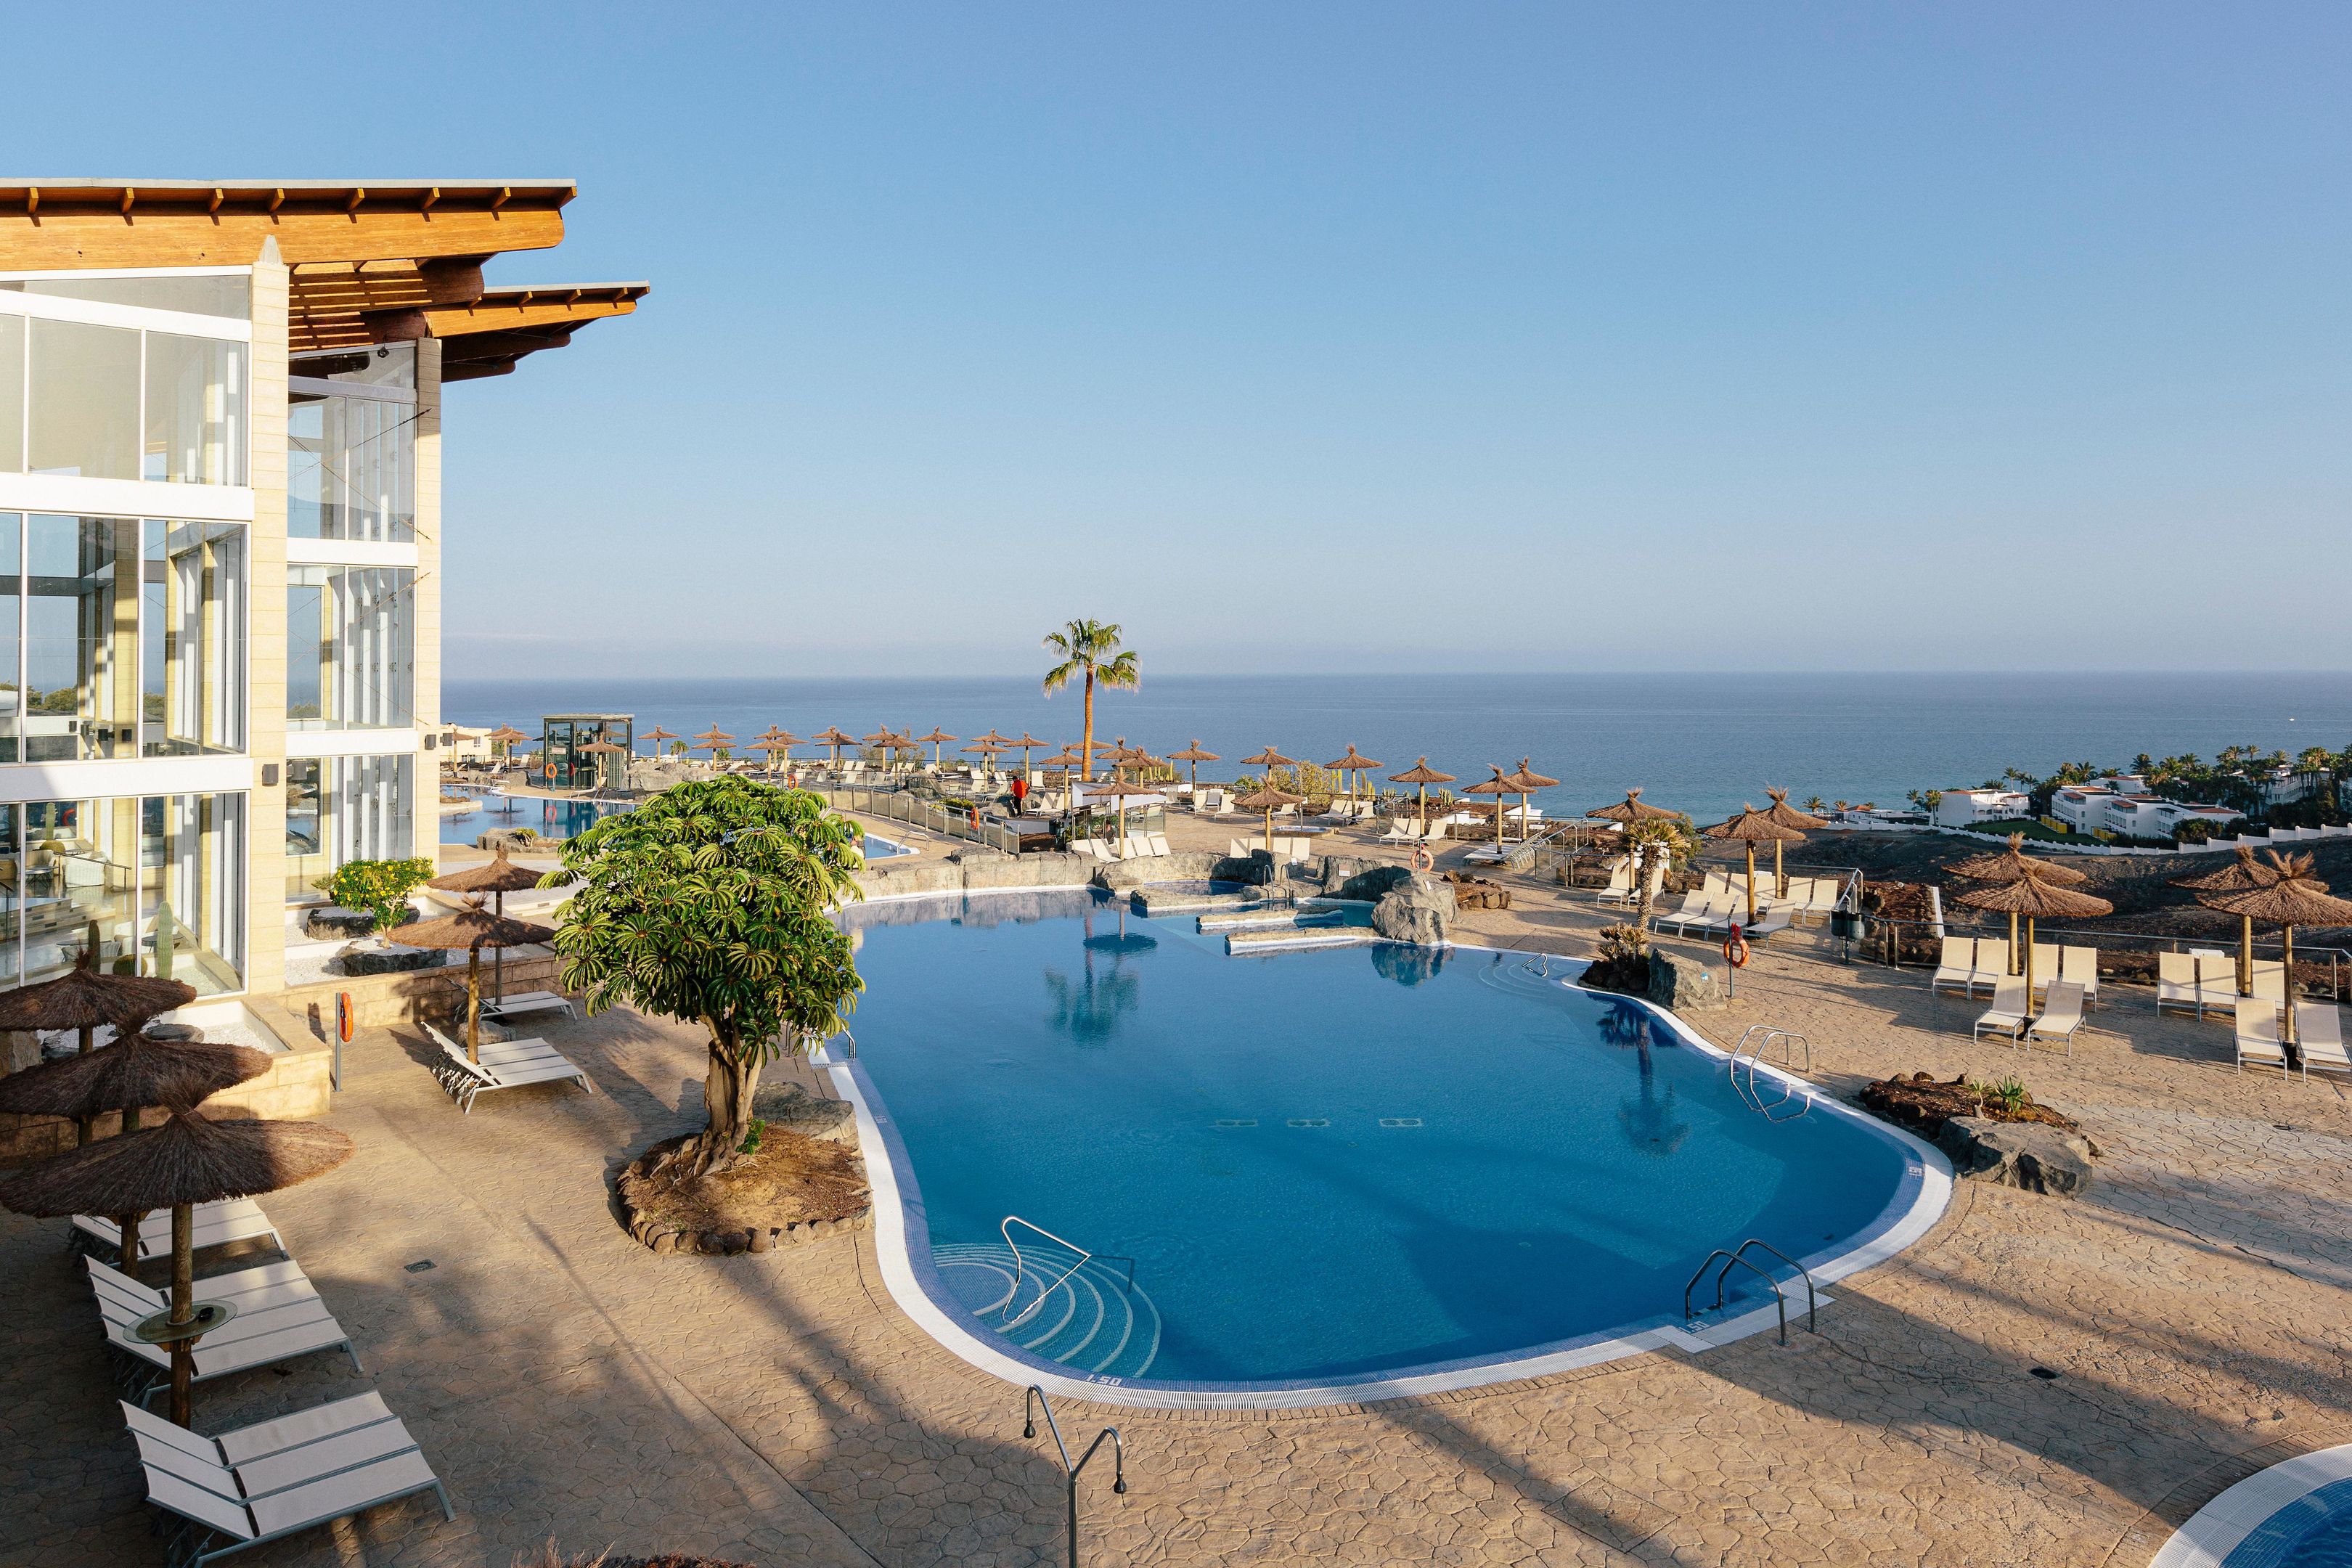 Hotel AluaVillage Fuerteventura